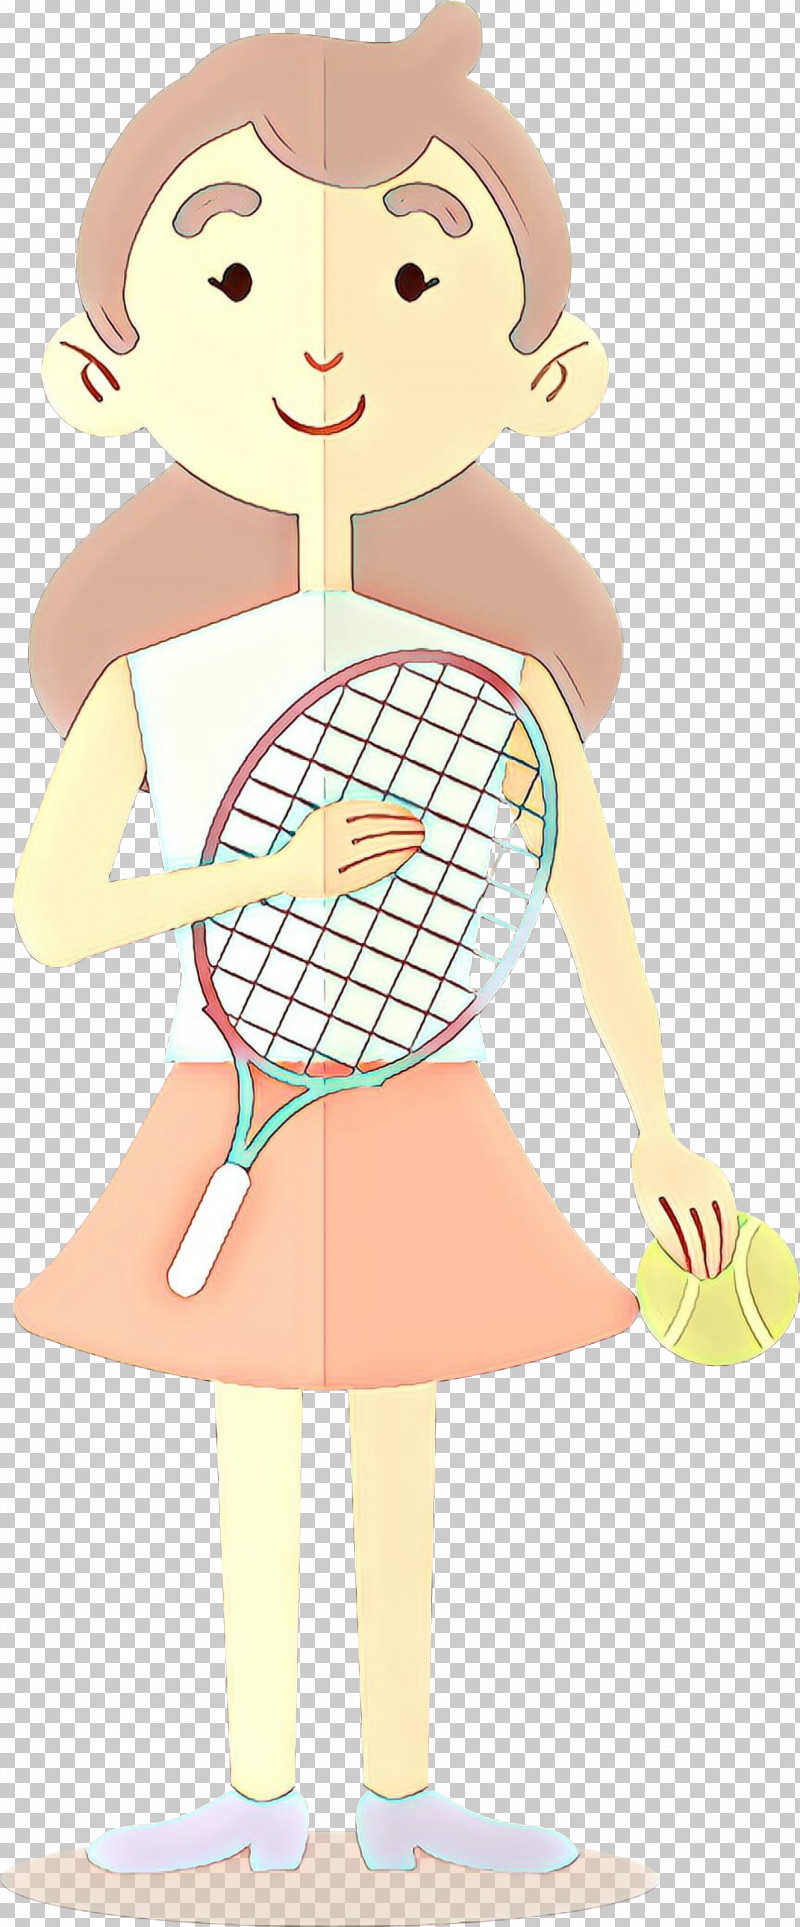 Tennis Racket Racket Cartoon Tennis Tennis Player PNG, Clipart, Cartoon, Racket, Racquet Sport, Tennis, Tennis Player Free PNG Download